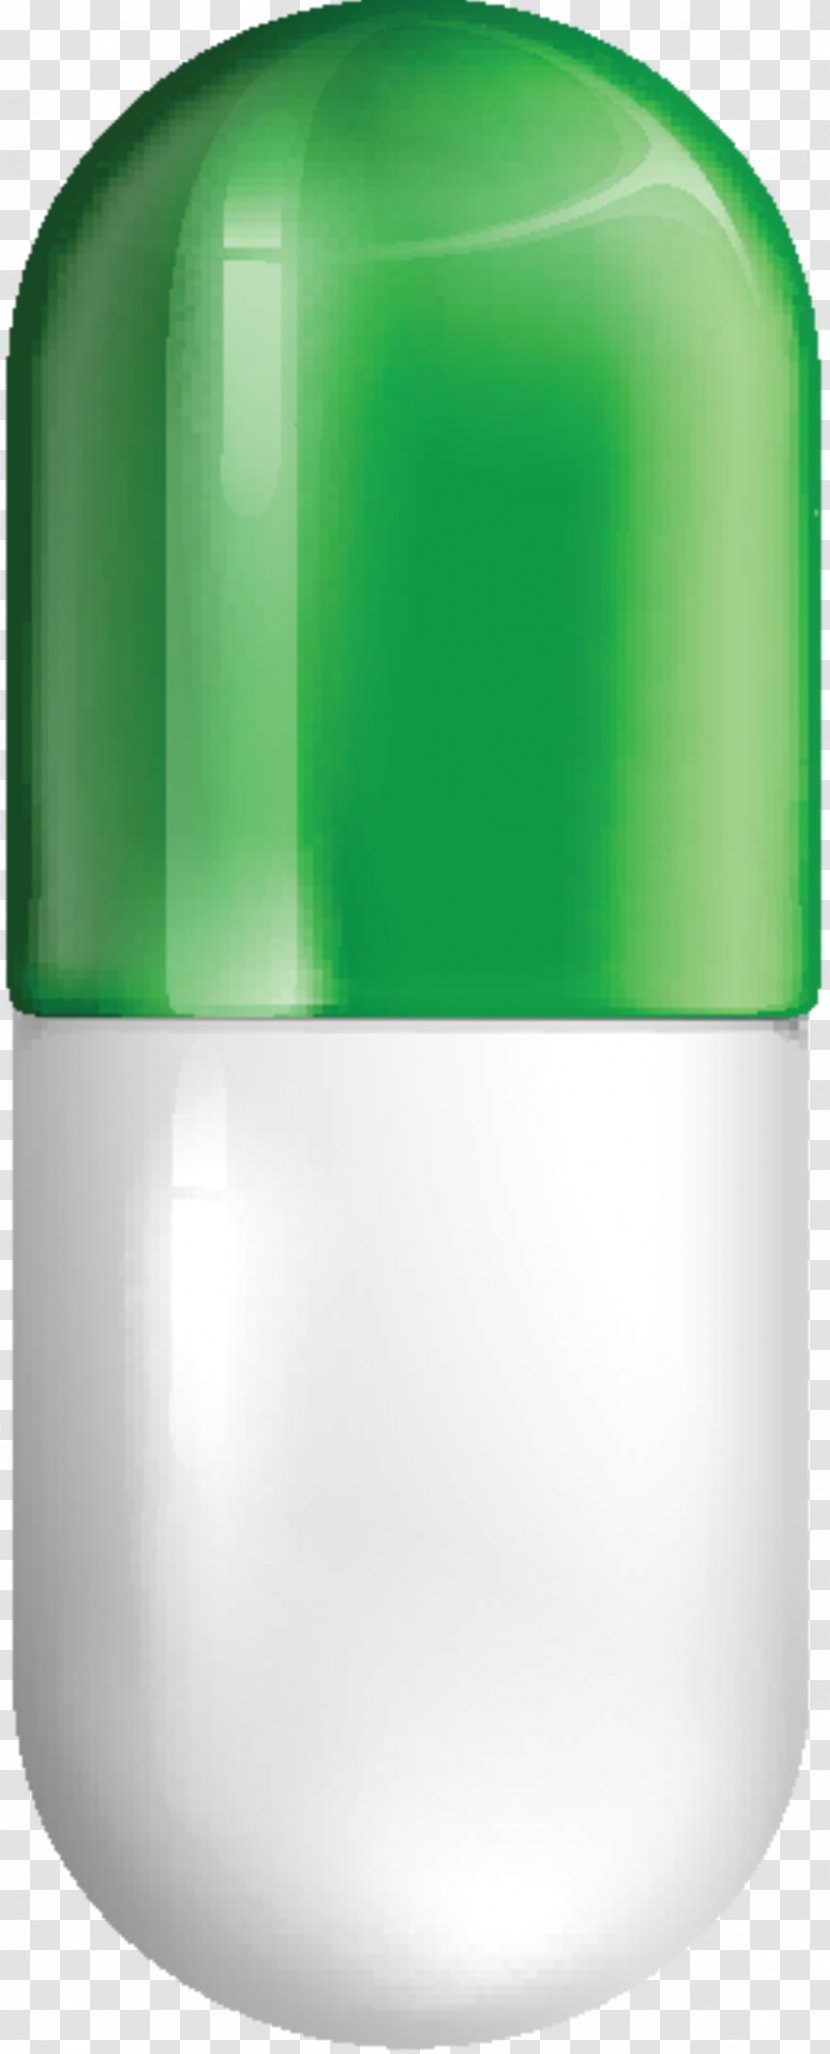 Bottle Product Design Cylinder Plastic - Drinkware - Vacuum Flask Transparent PNG